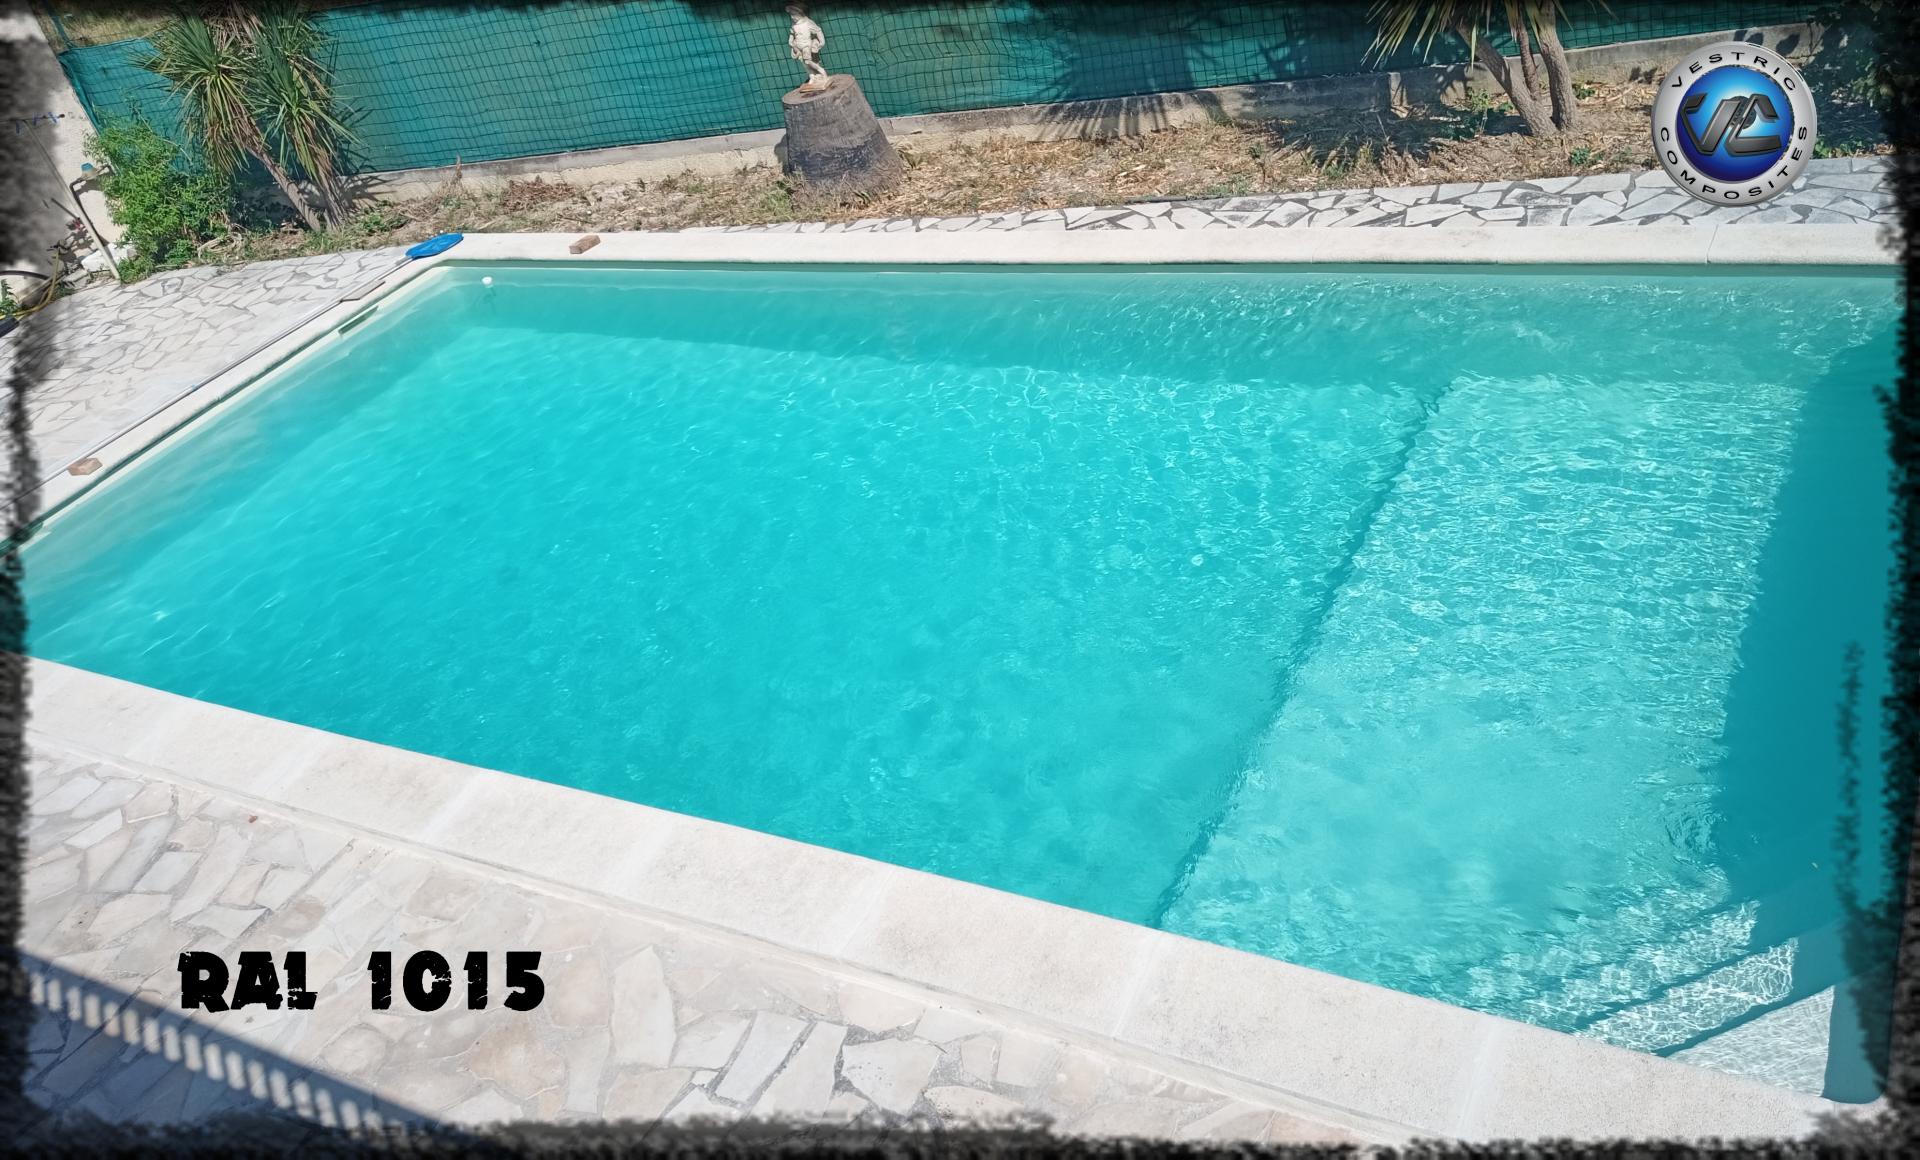 Ral 1015 couleur ivoire clair piscine en eau vestric composites 19